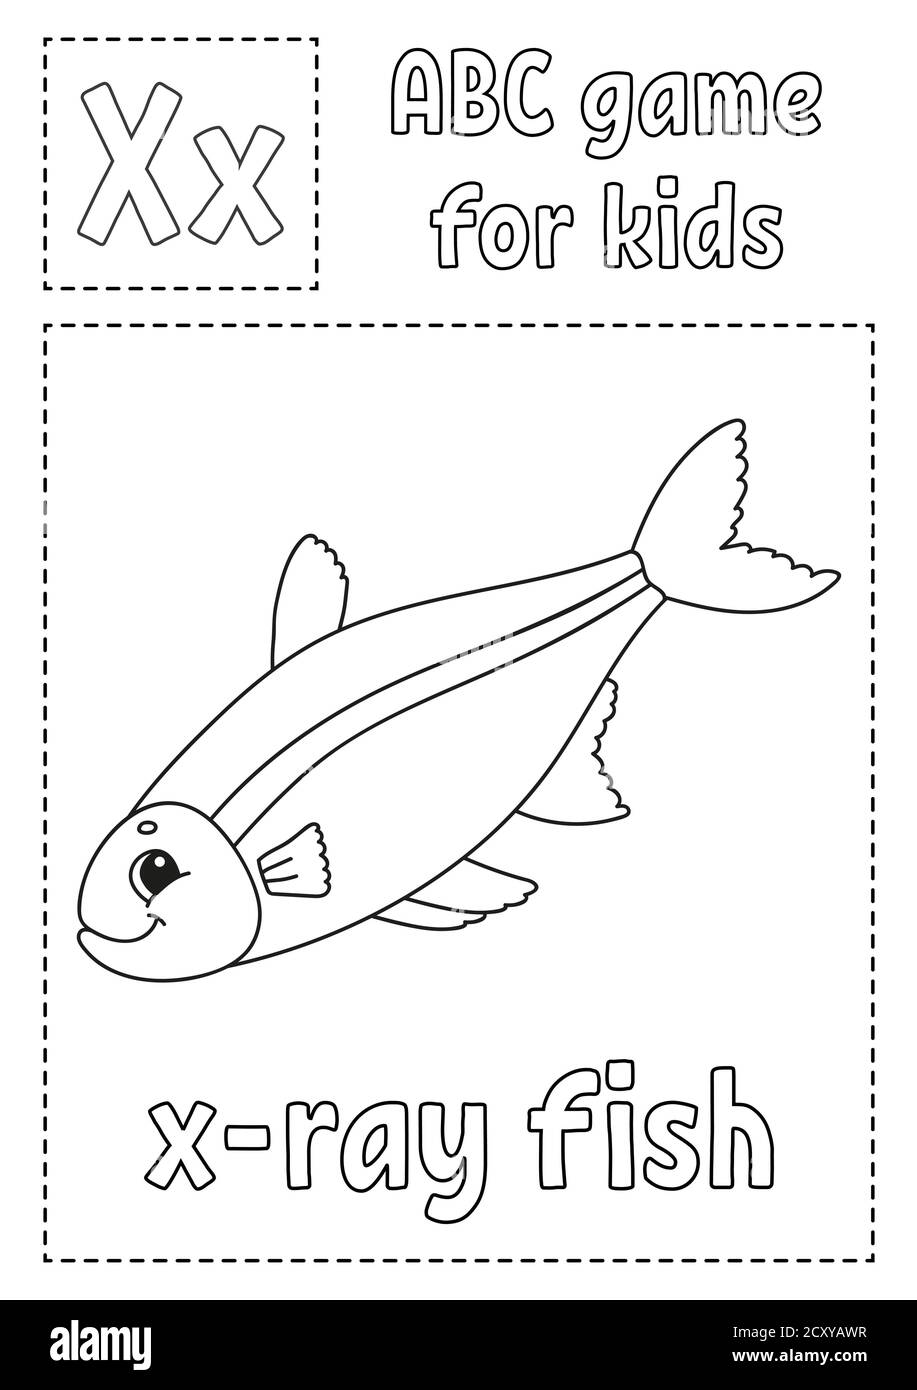 La lettre X est destinée aux poissons à rayons X. Jeu ABC pour enfants. Page de coloriage de l'alphabet. Personnage de dessin animé. Mot et lettre. Illustration vectorielle. Illustration de Vecteur